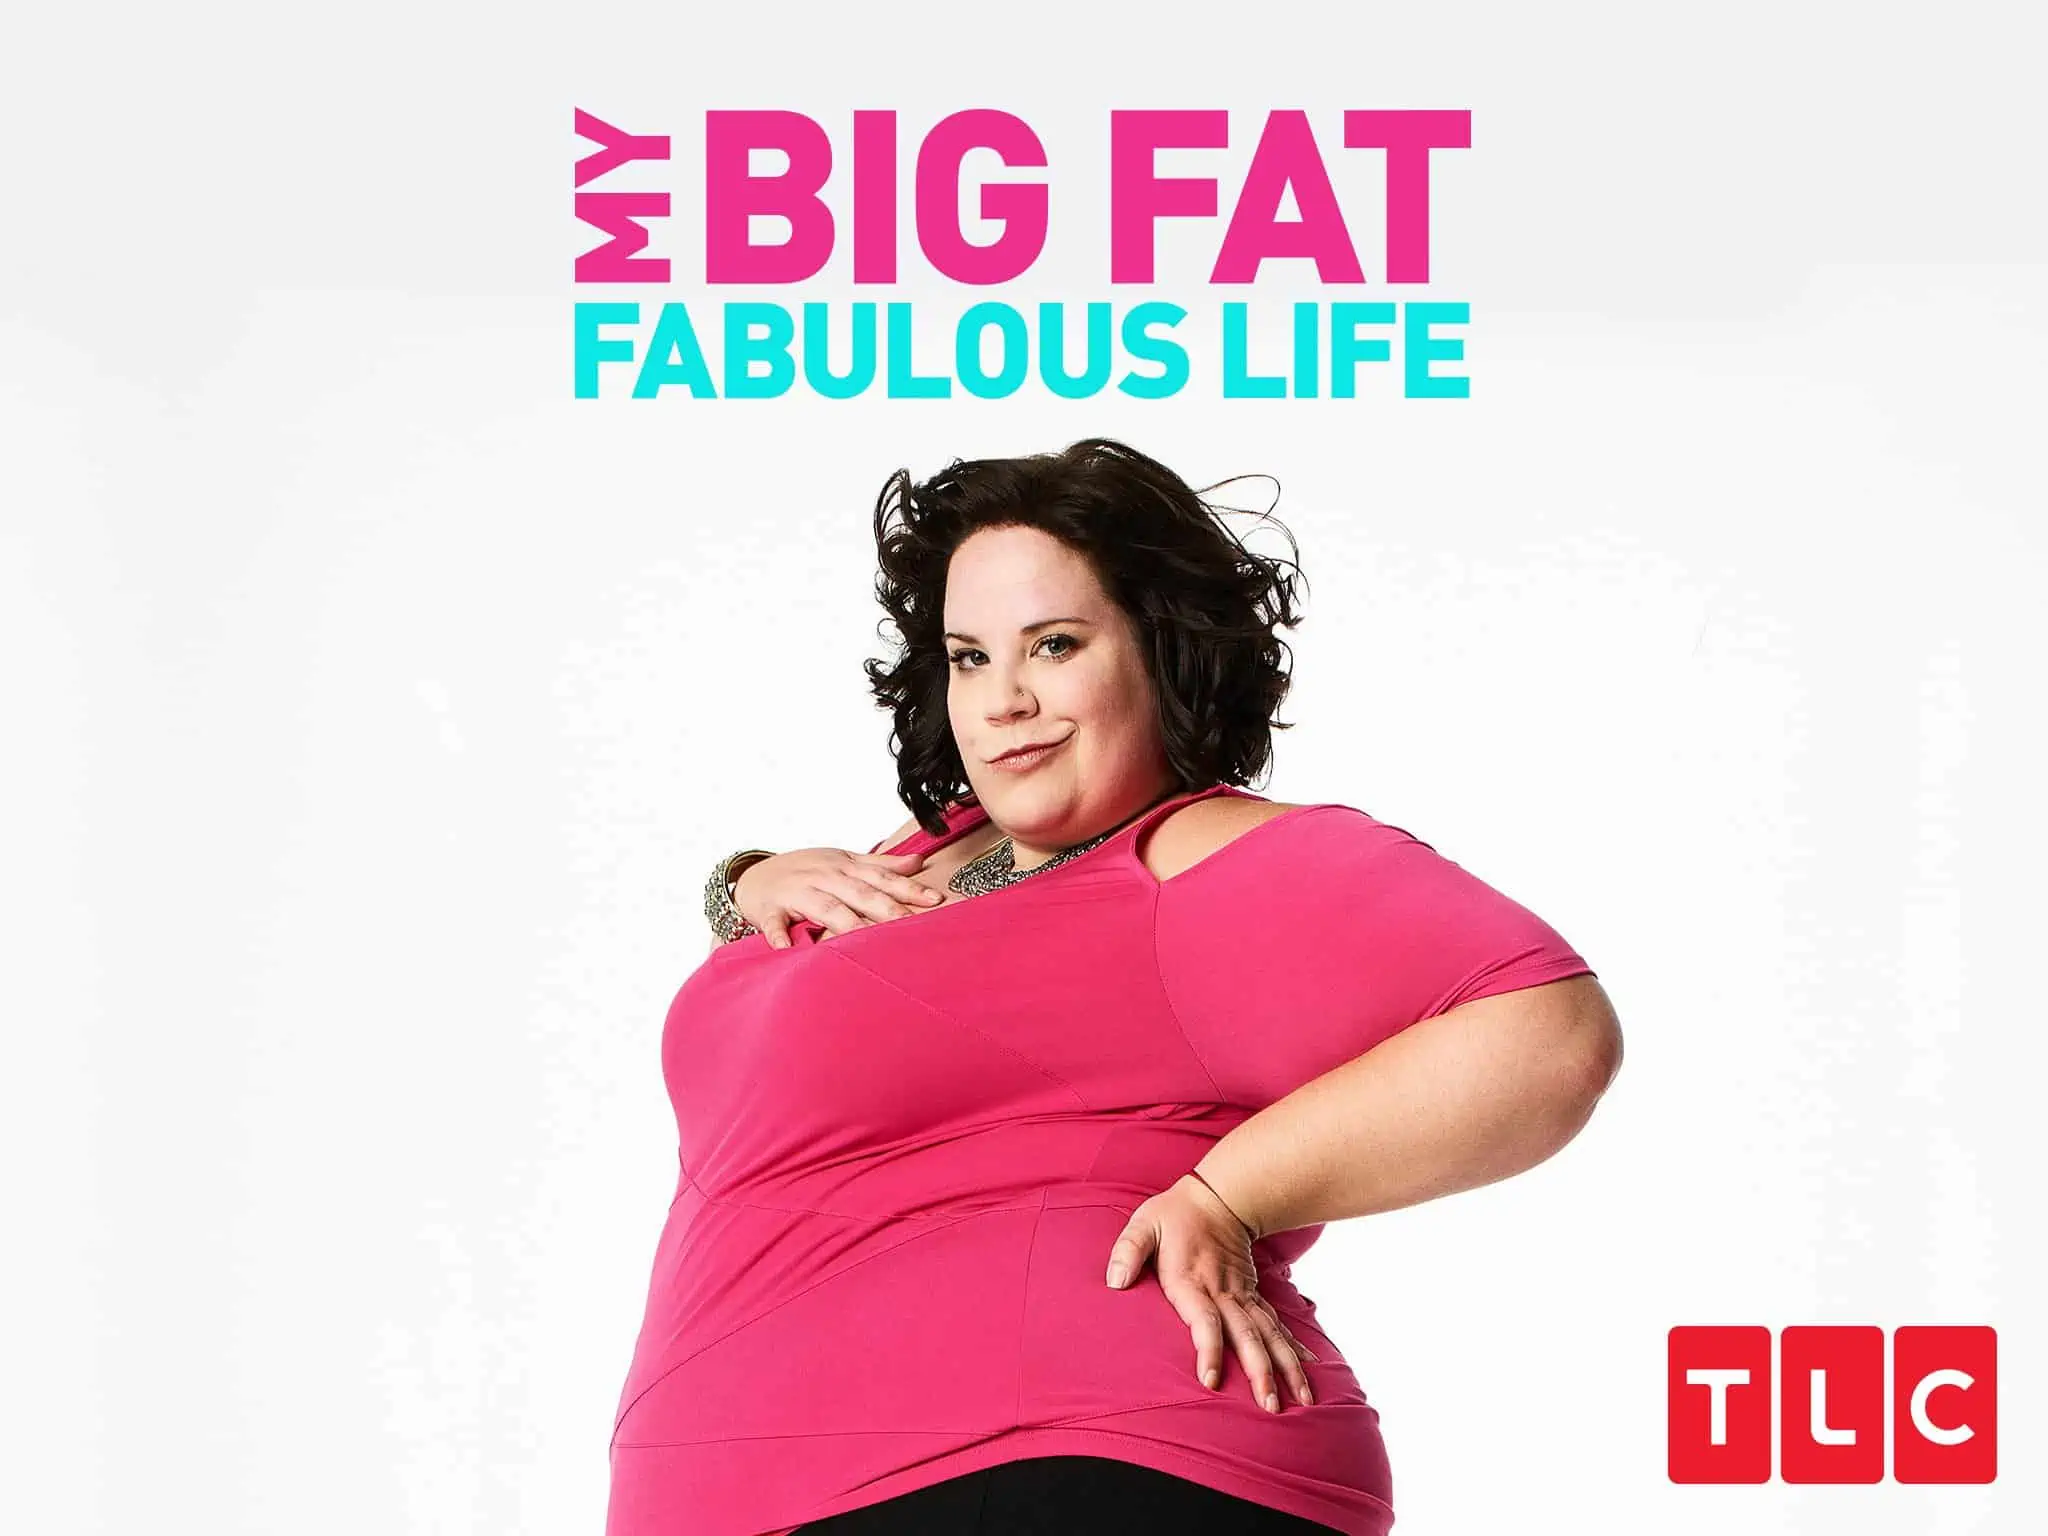 Where Can You Watch “My Big Fat Fabulous Life?”